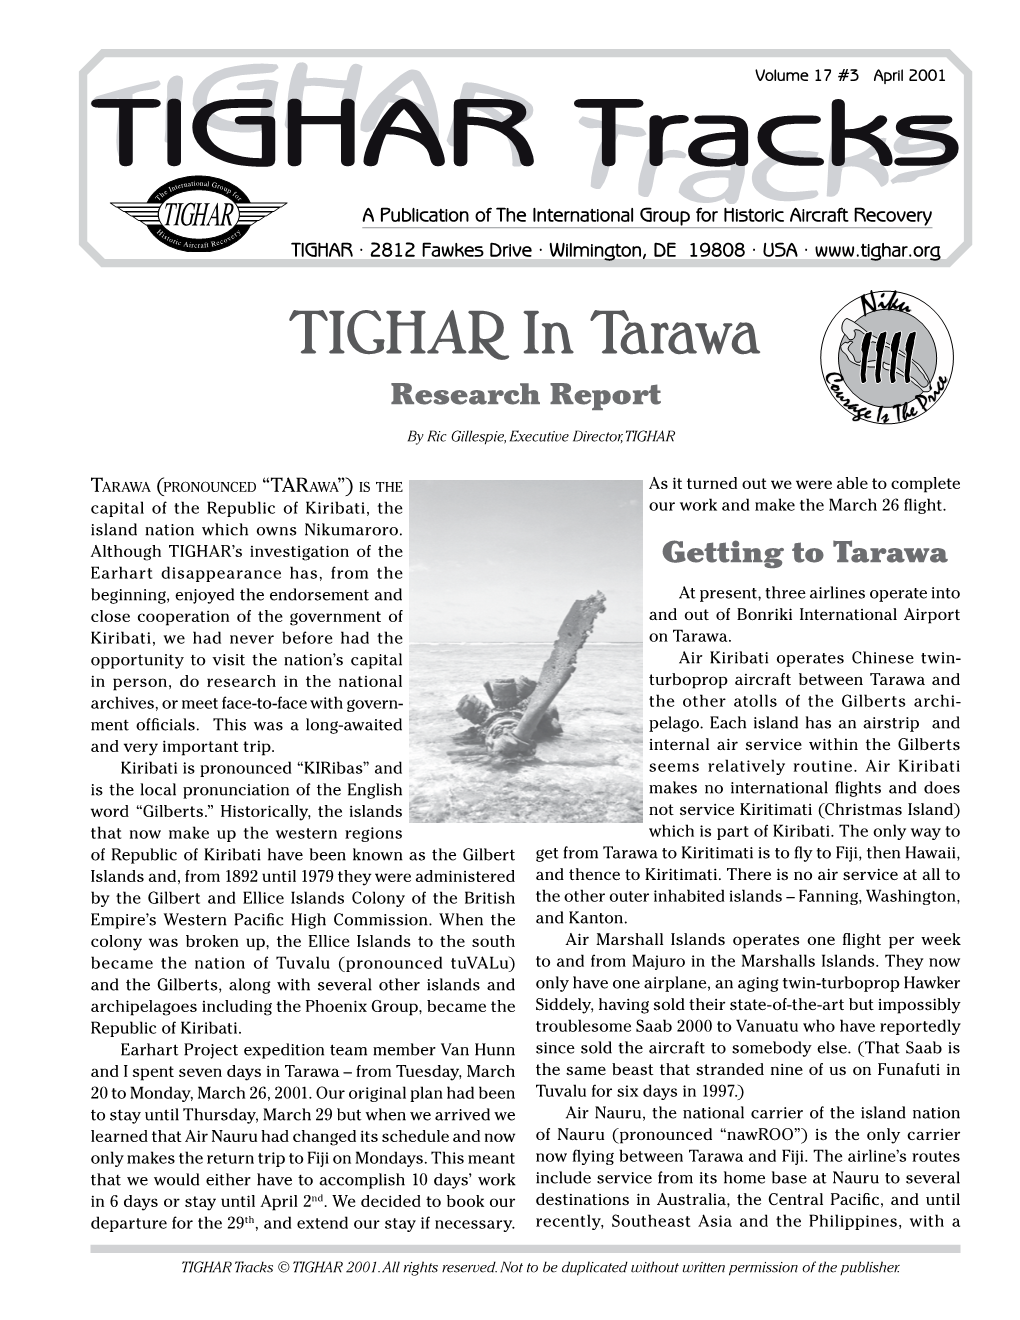 TIGHAR in Tarawa Research Report IIII